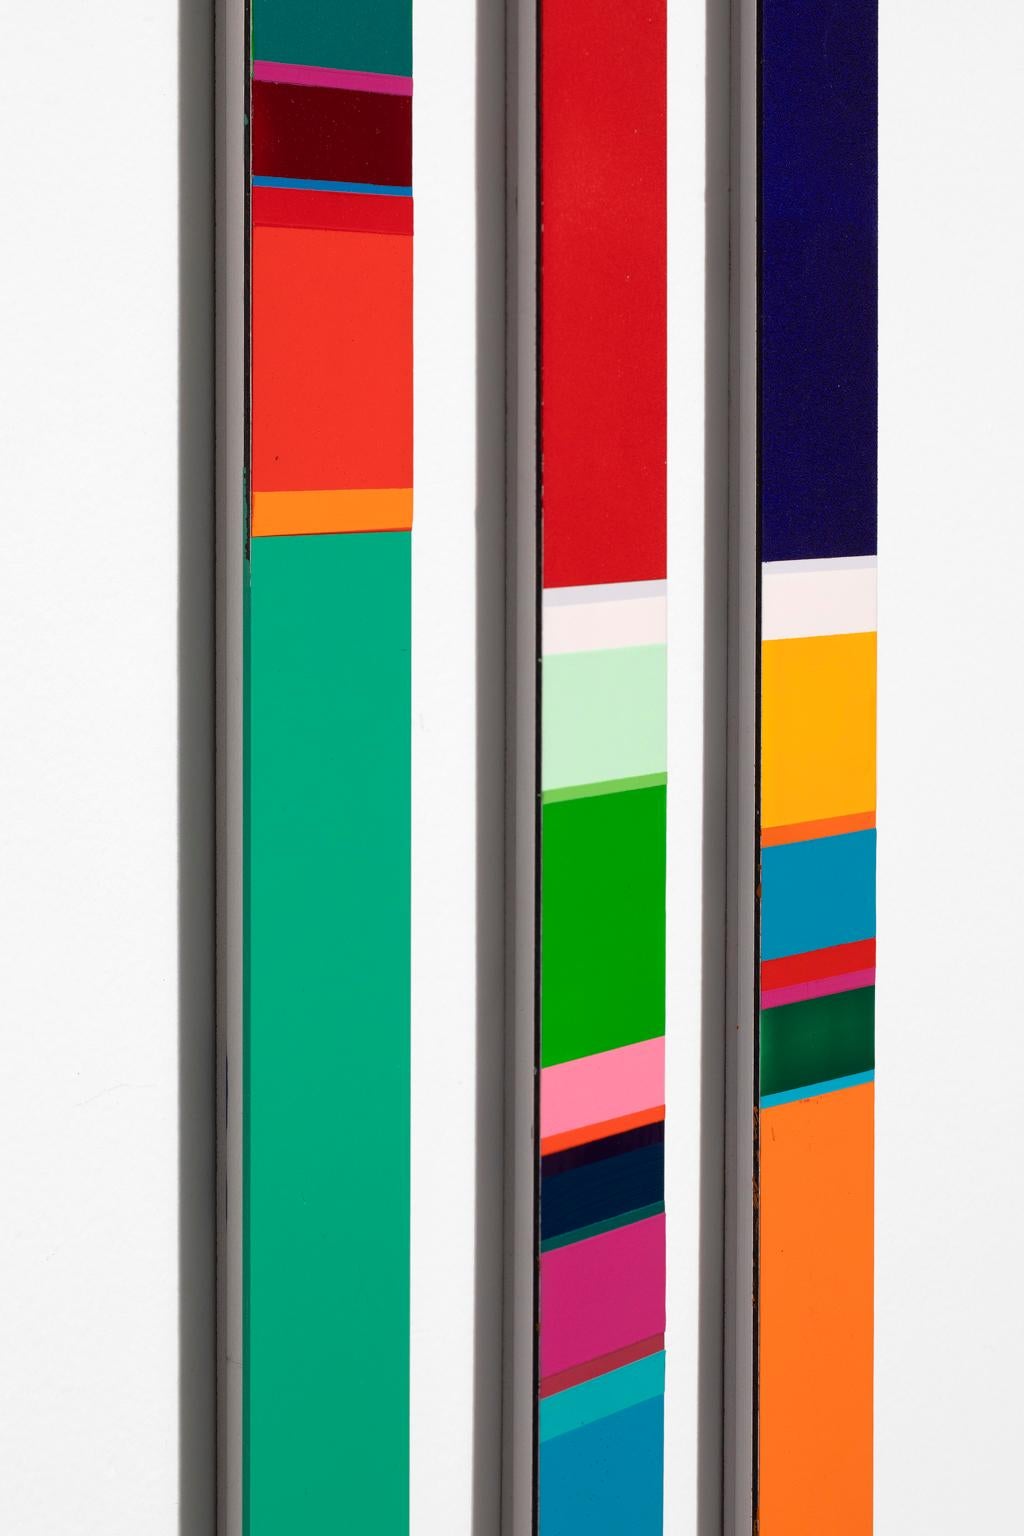 Nicholas Bodde Triptych Color Field on Aluminum  For Sale 5